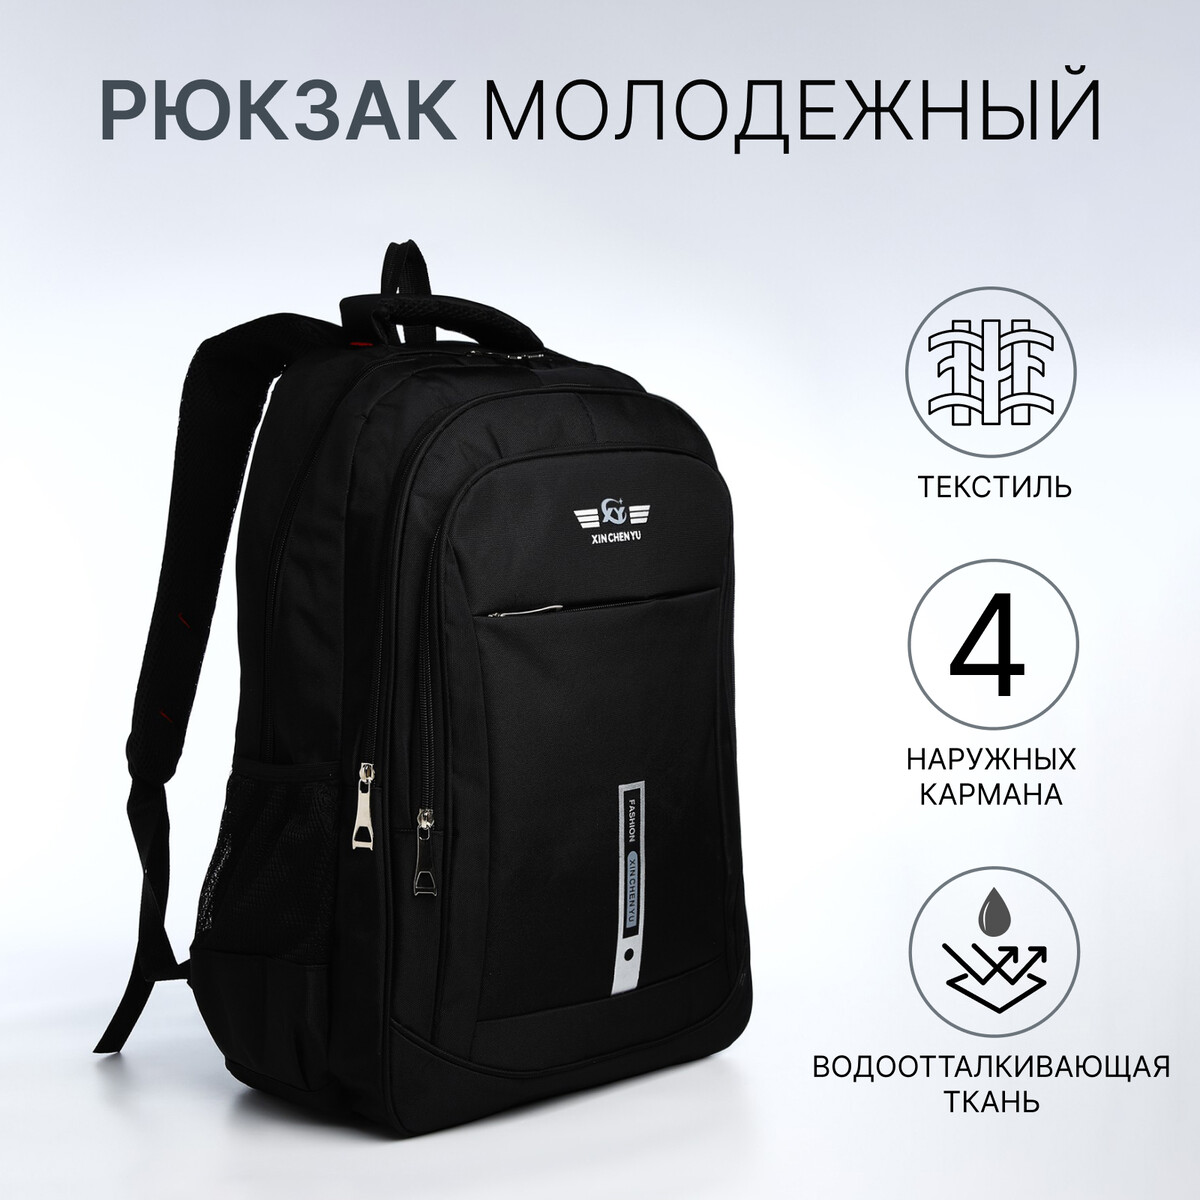 Рюкзак молодежный из текстиля, 2 отдела на молнии, 4 кармана, цвет черный/серый